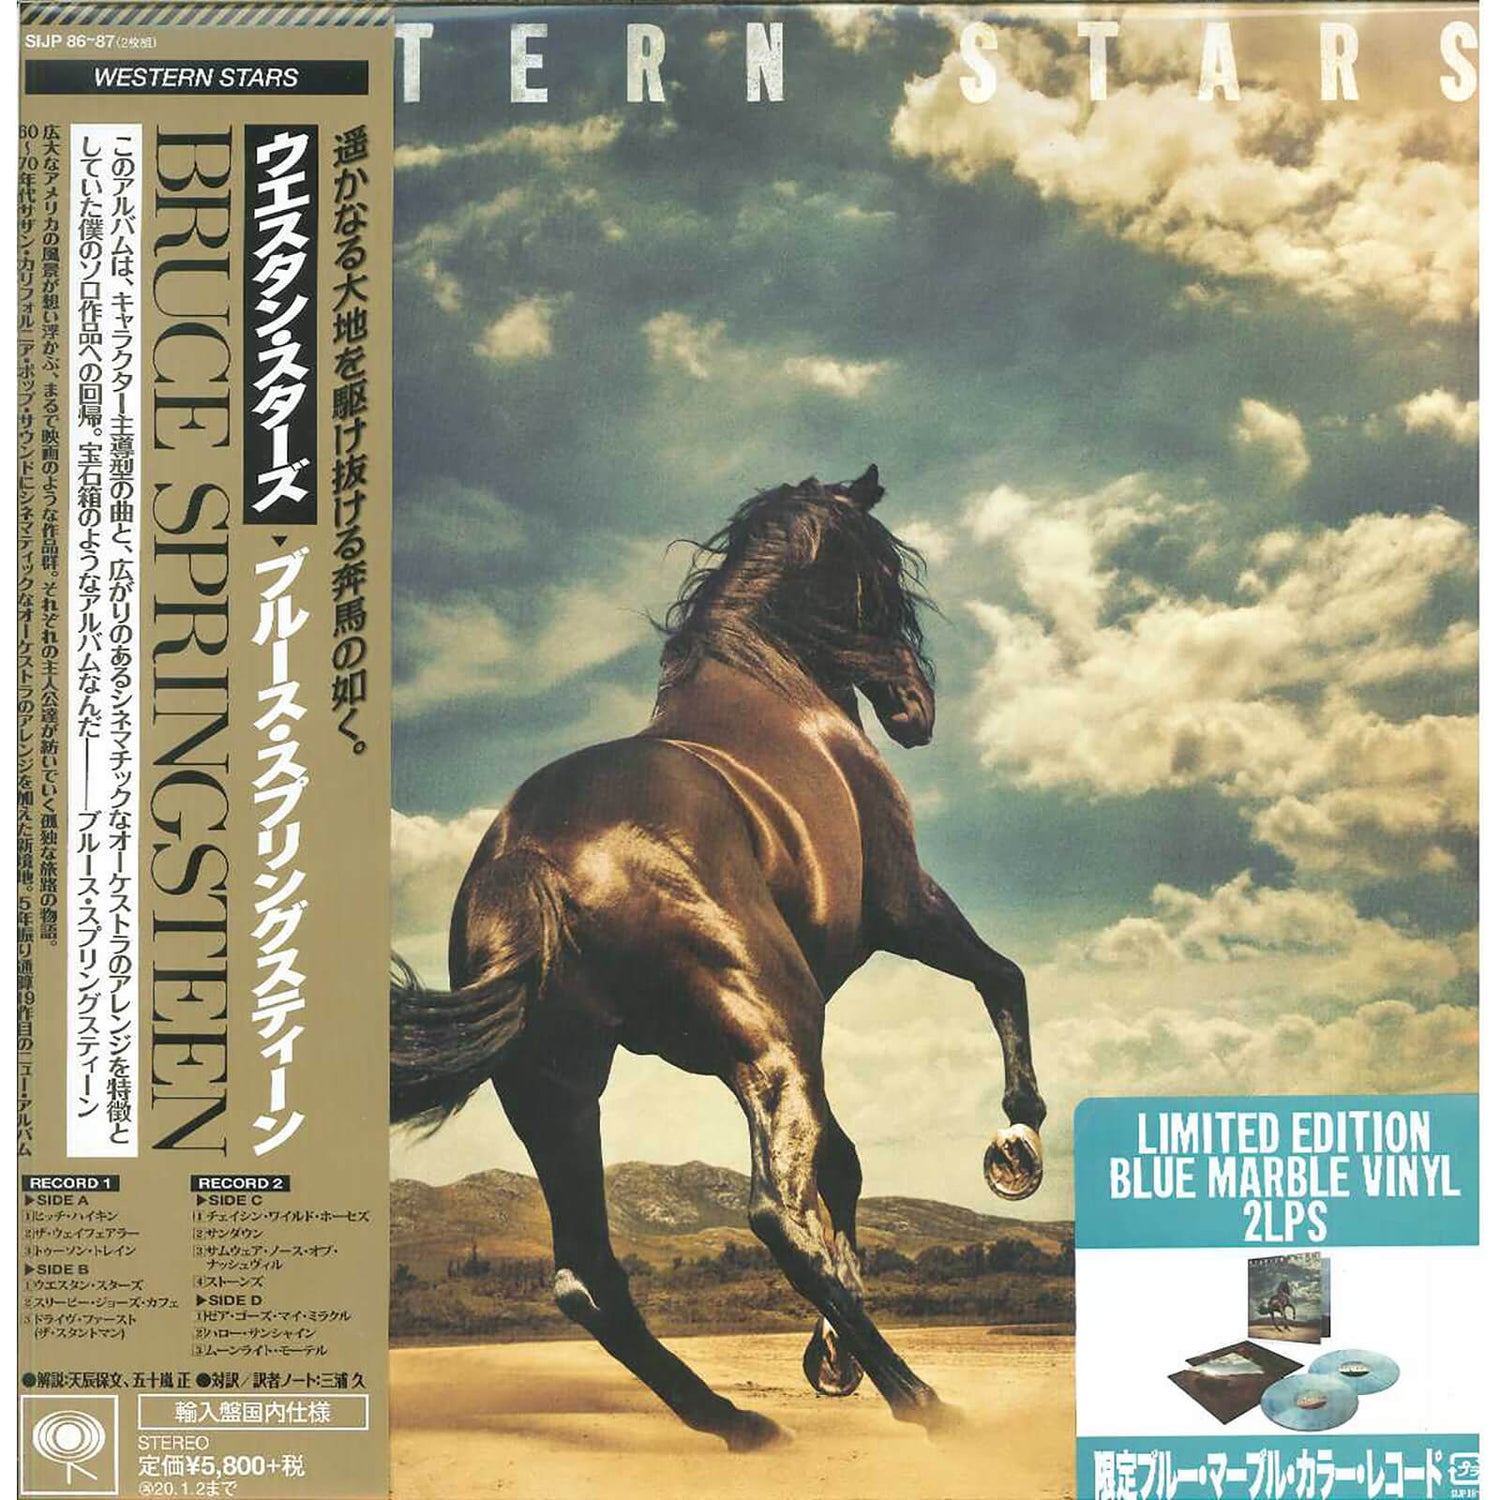 Bruce Springsteen - Western Stars LP Japanische Ausgabe